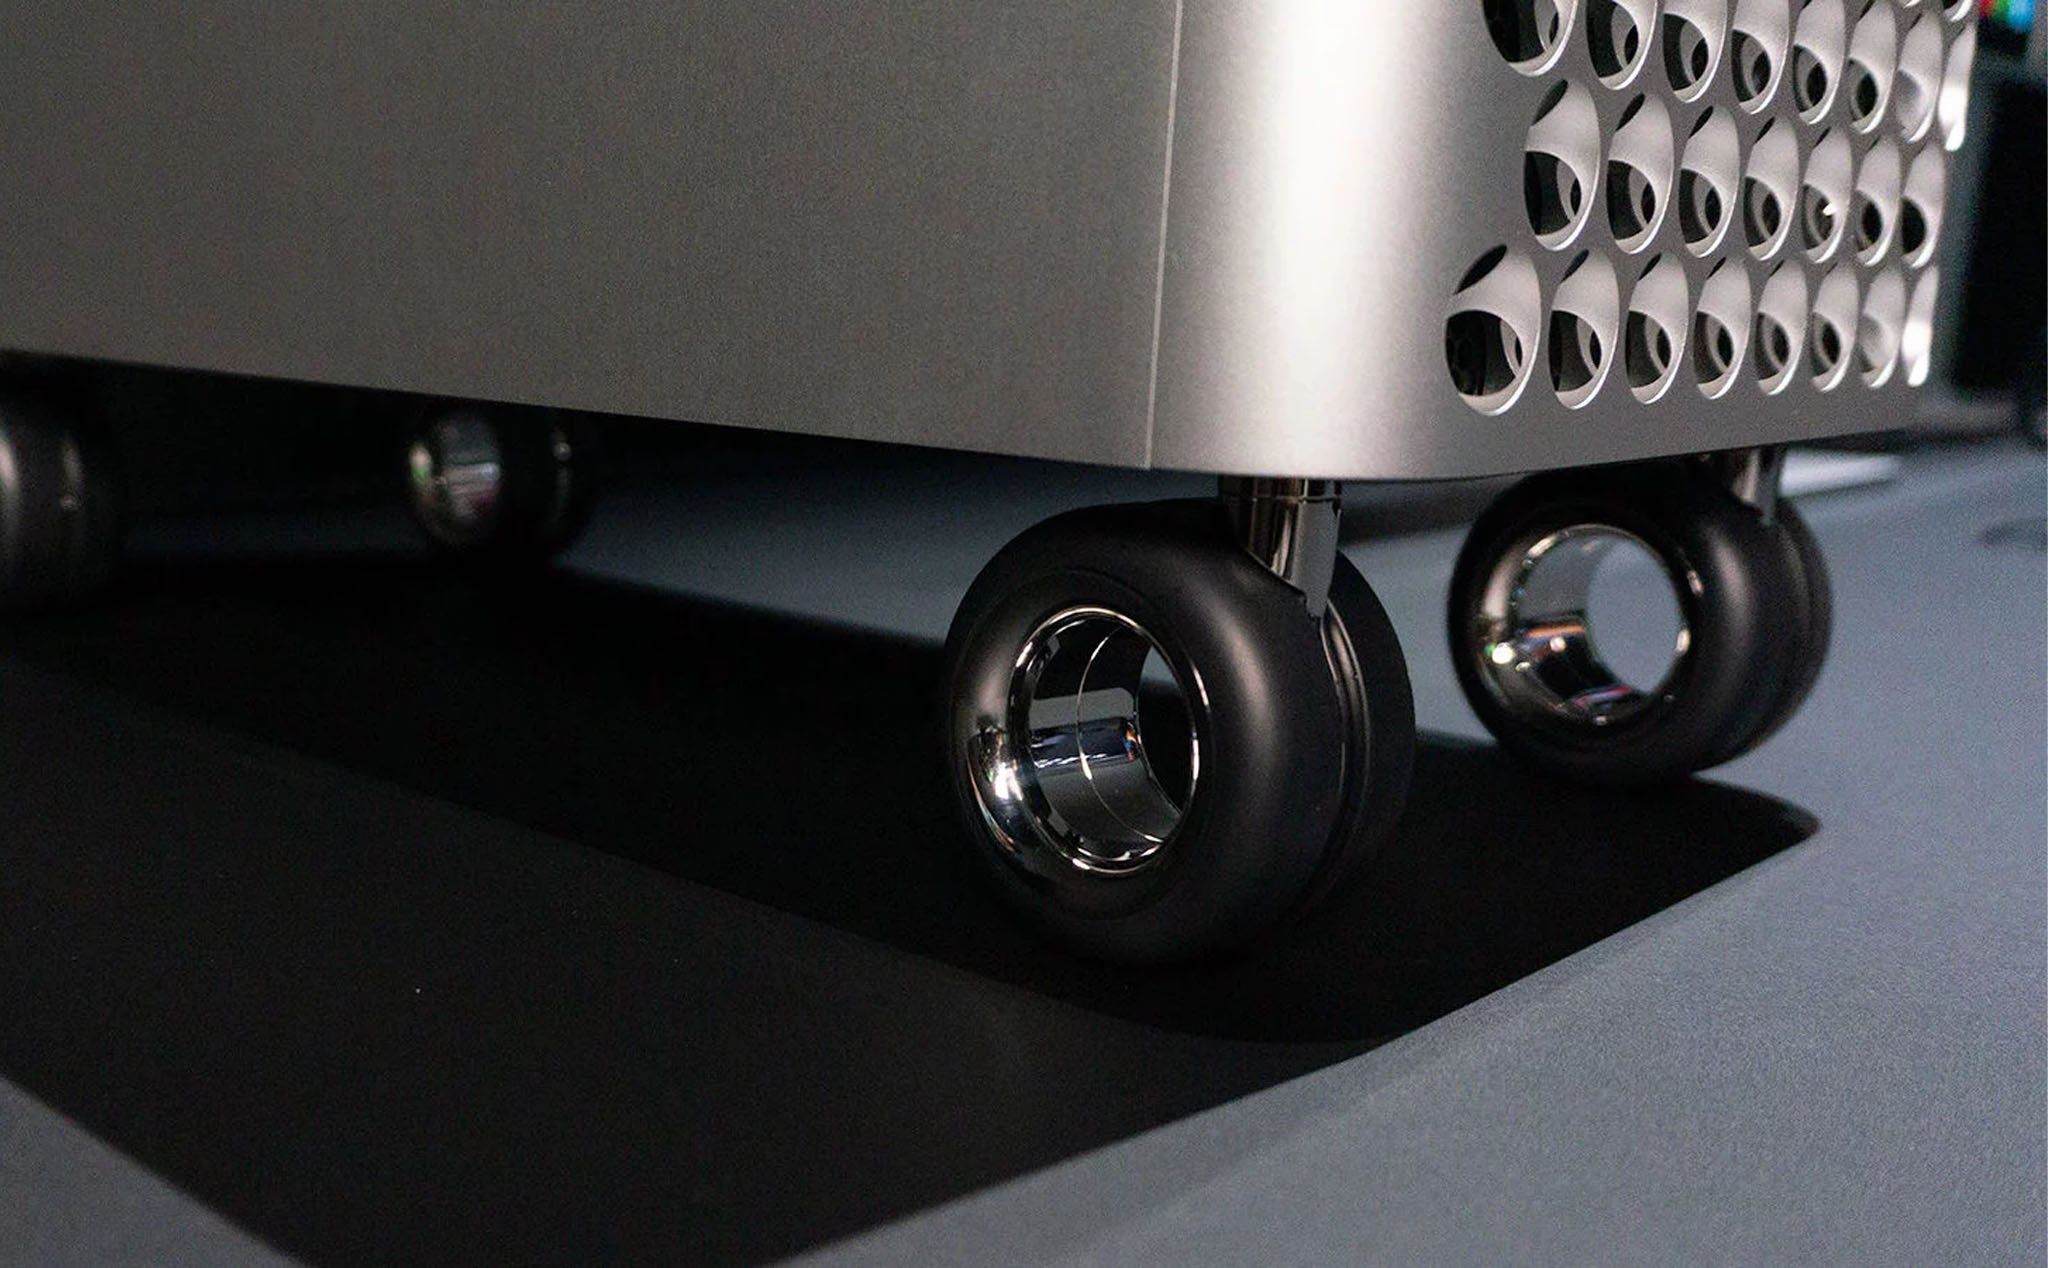 Sắp tới, Apple sẽ bán bộ kit để người dùng tự gắn bánh xe cho Mac Pro tại nhà